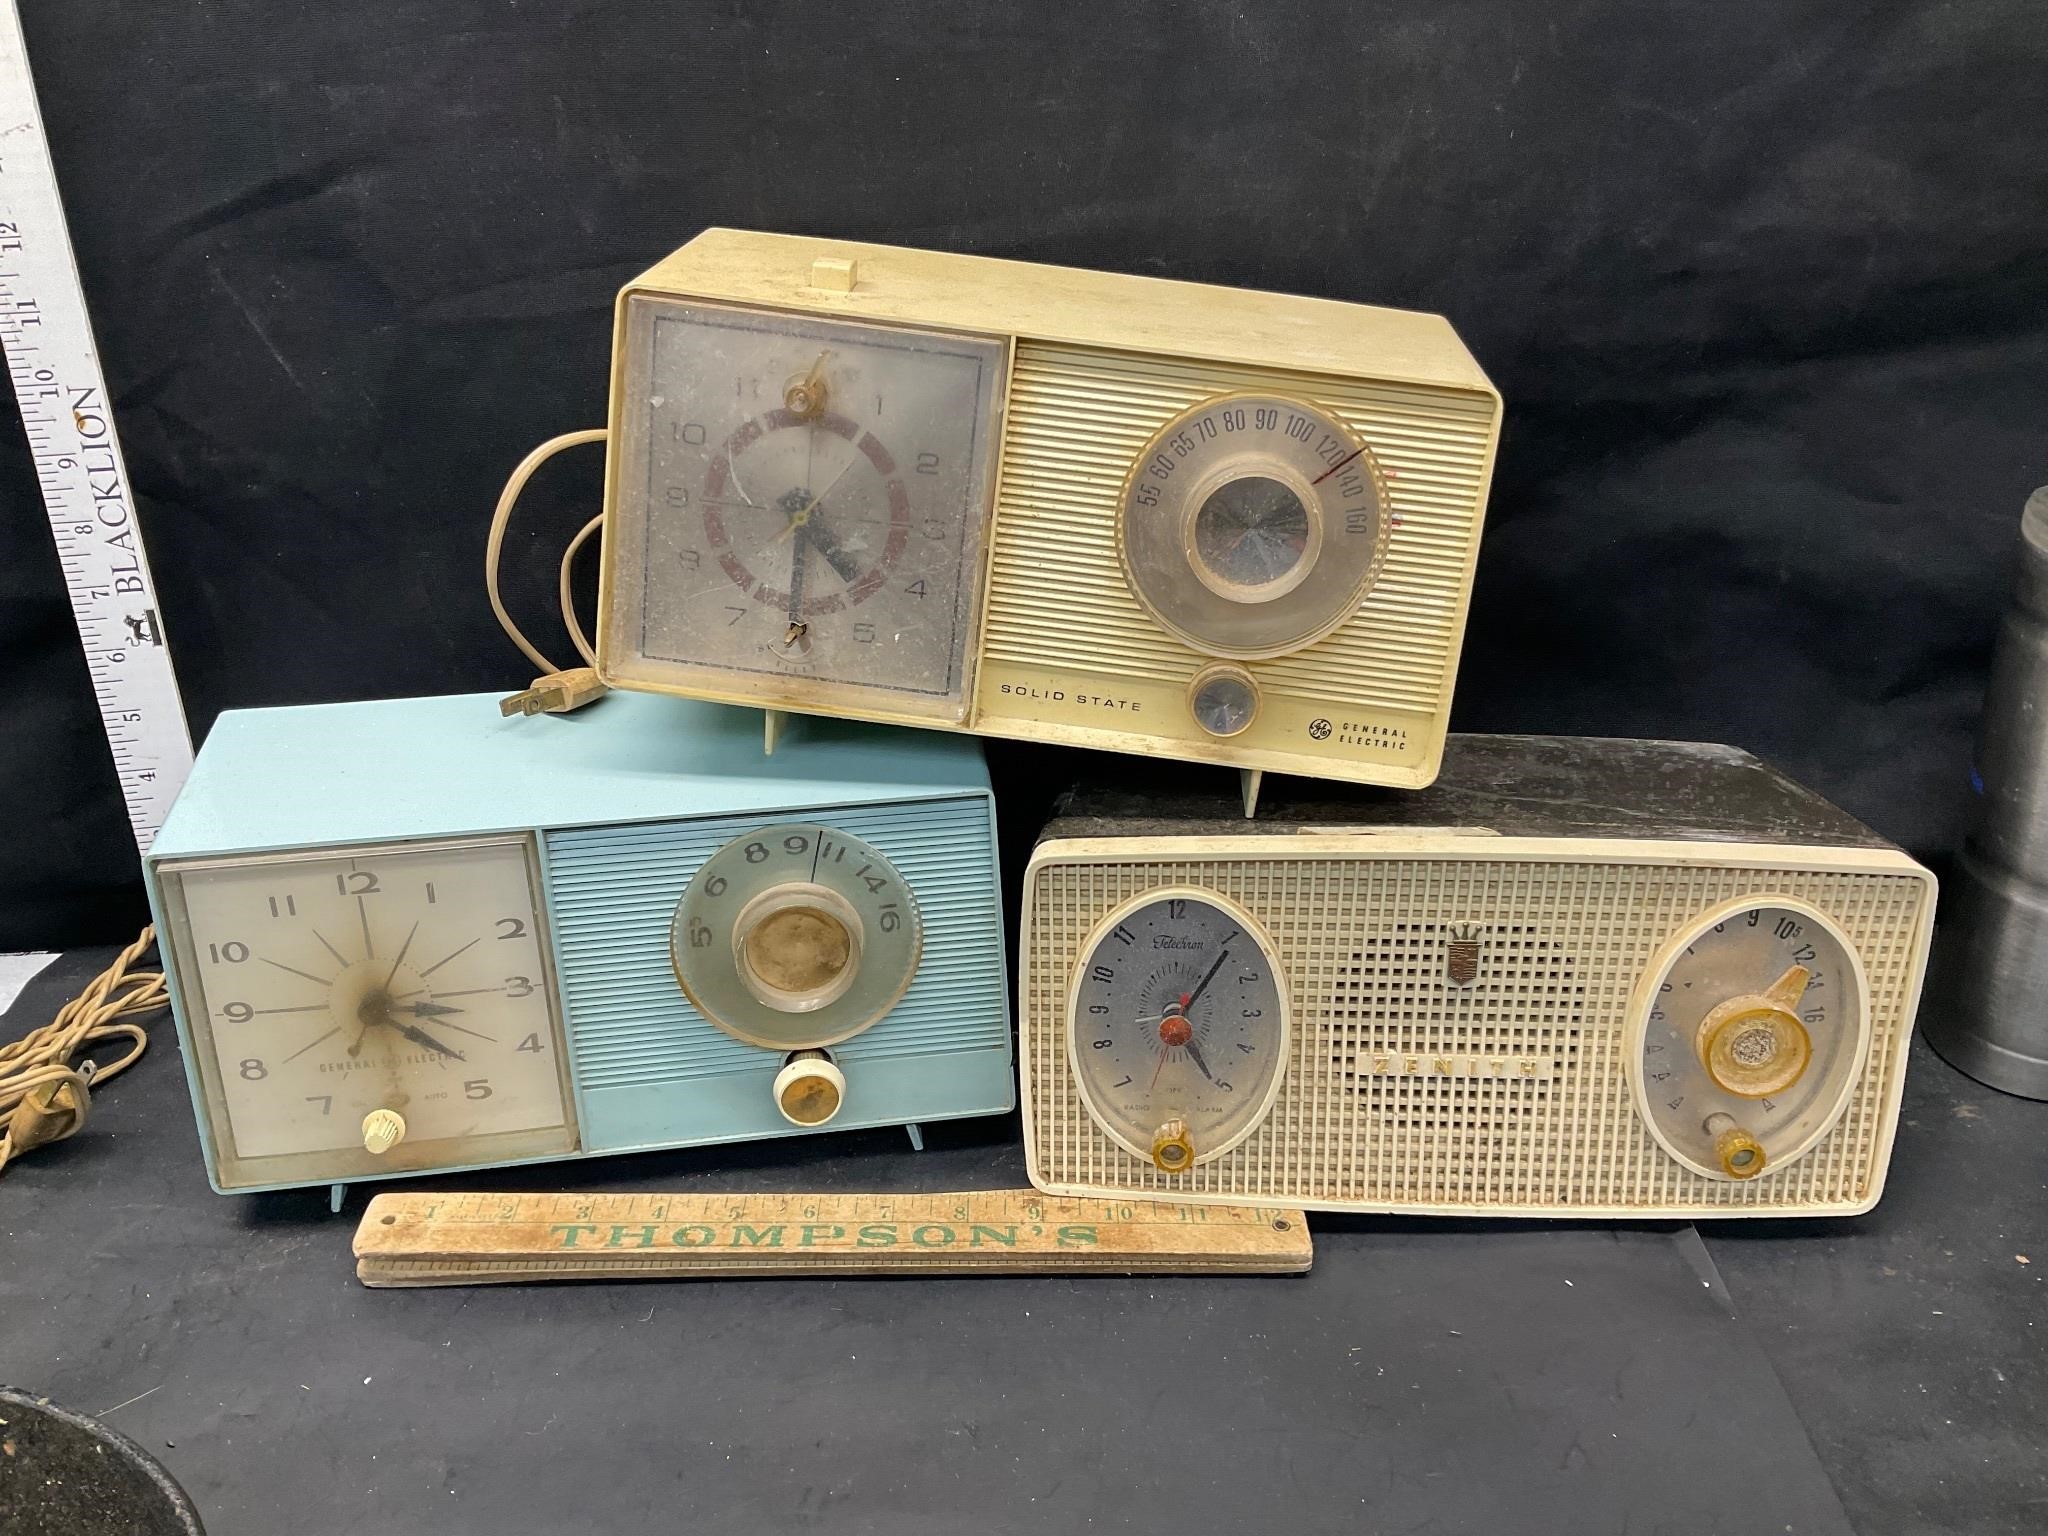 3 vintage clock radios